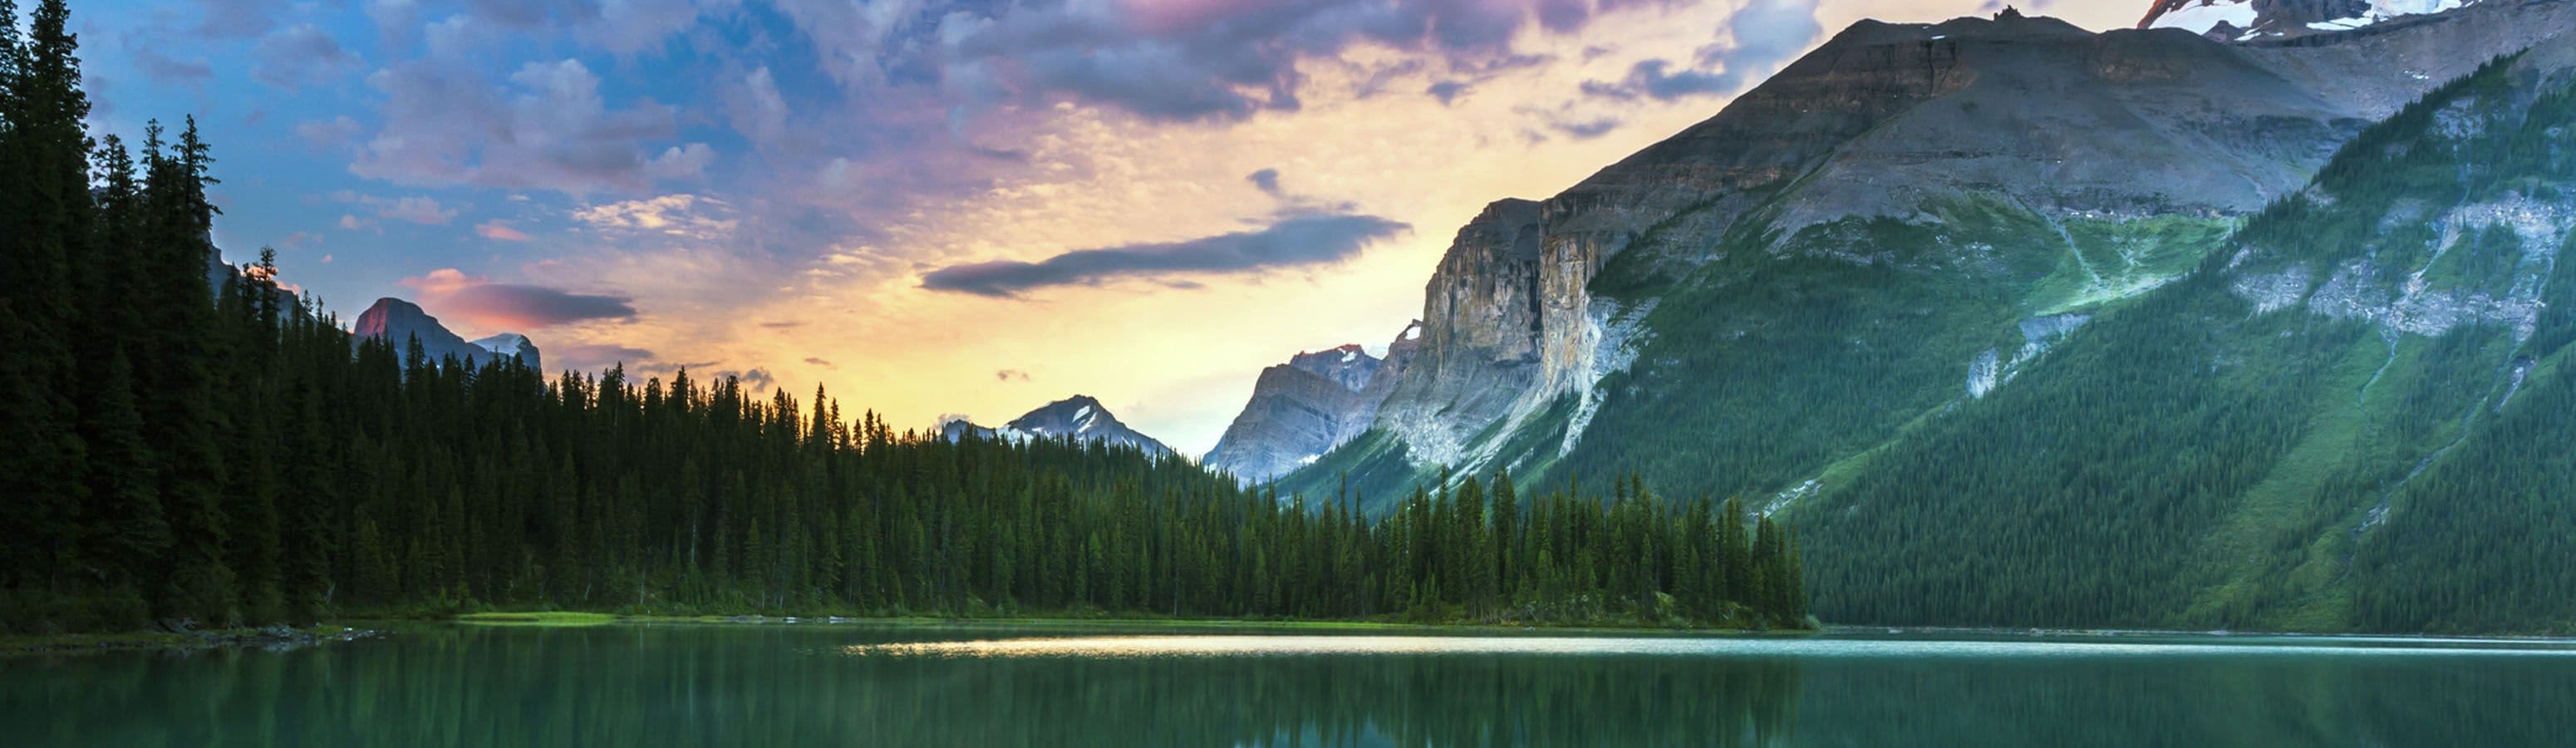 Канада предлагает бесплатный доступ к национальным паркам